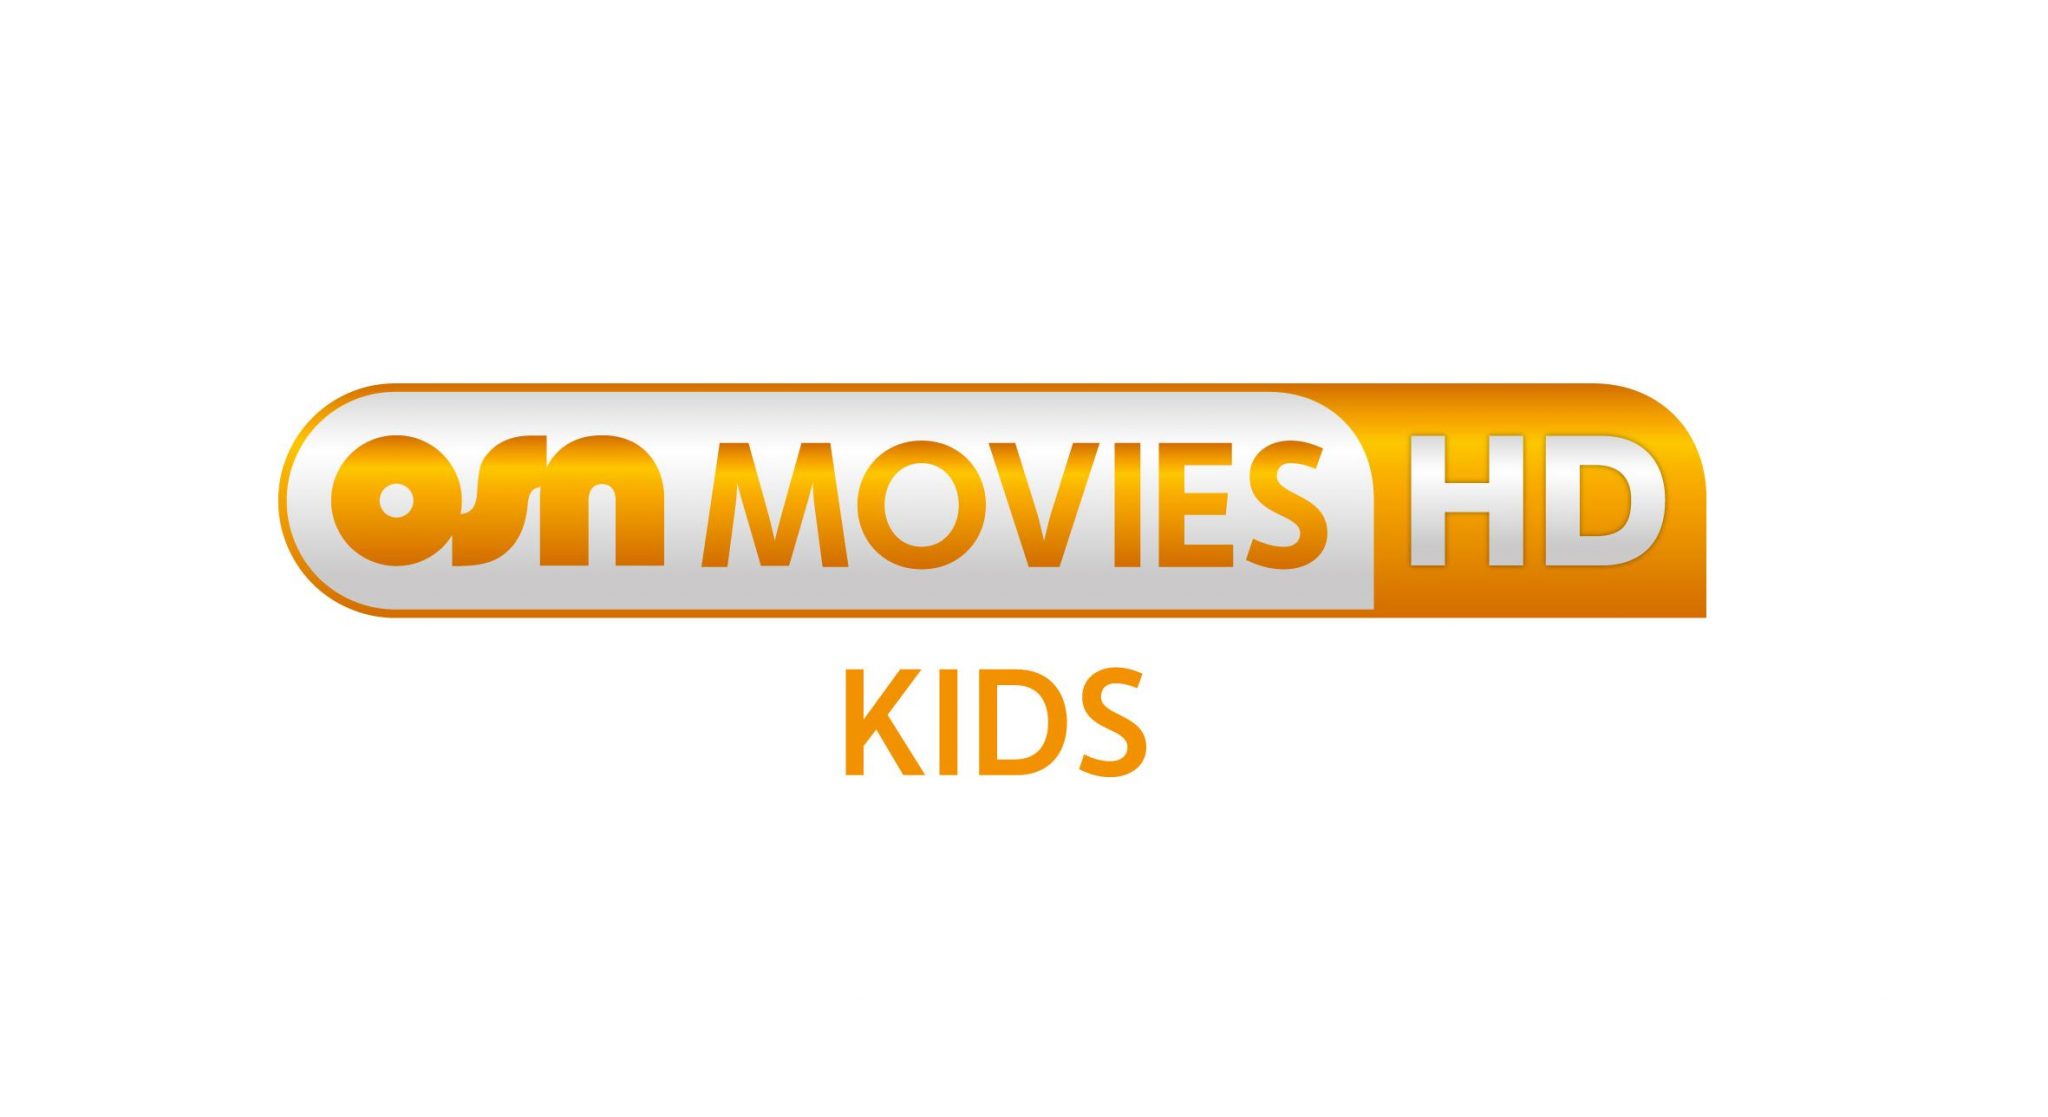 تردد قناة osn movies kids المشفرة للأطفال على النايل سات وأروع البرامج المميزة